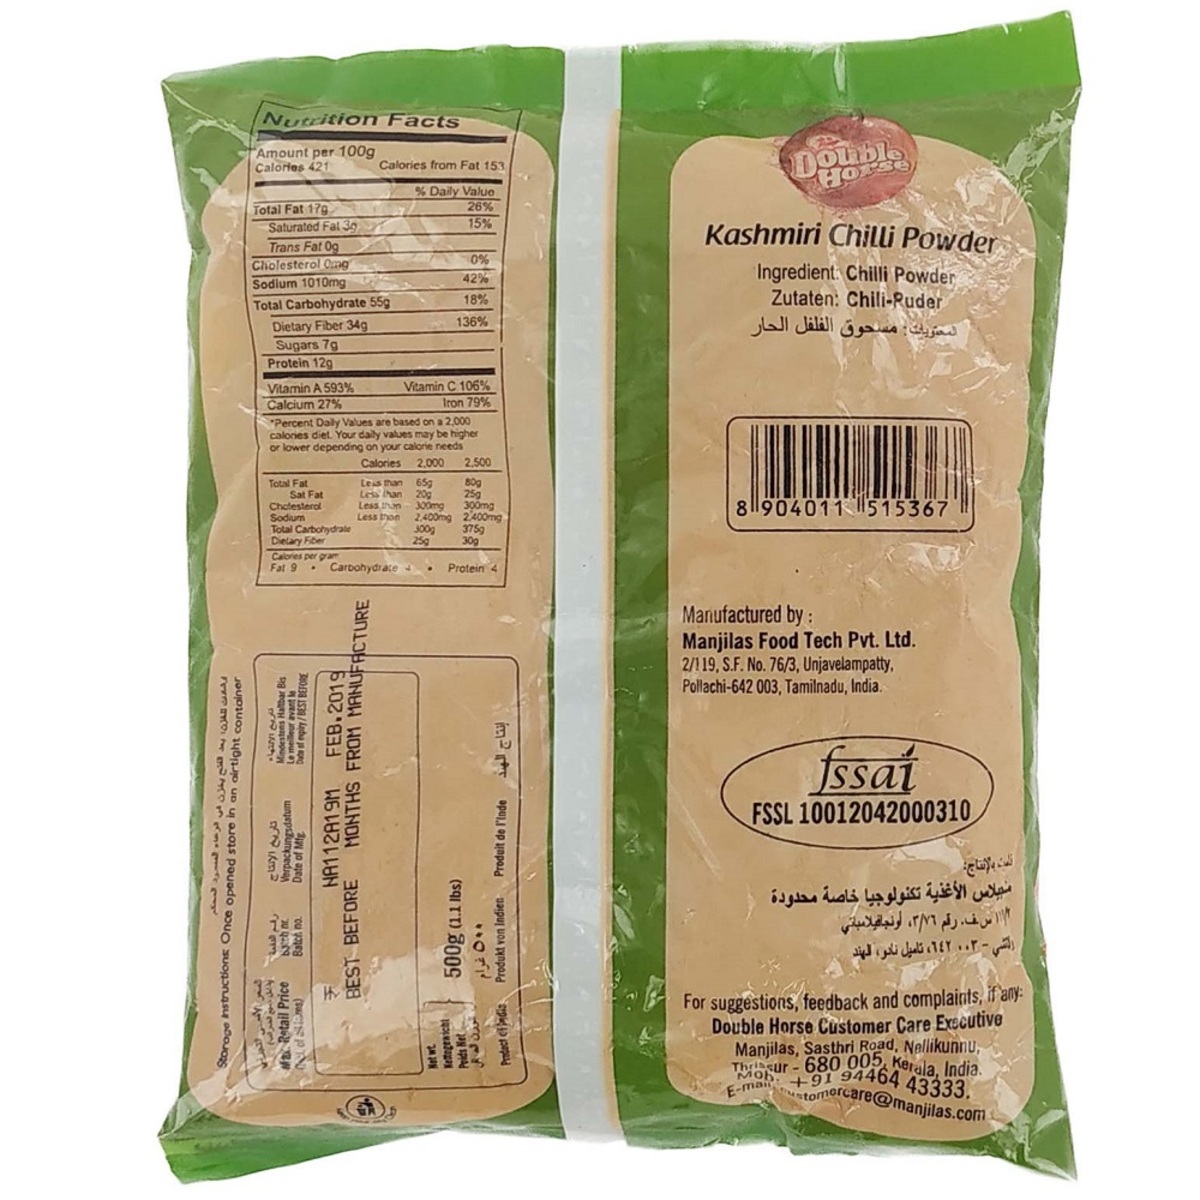 Double Horse Kashmiri Chilli Powder 500g